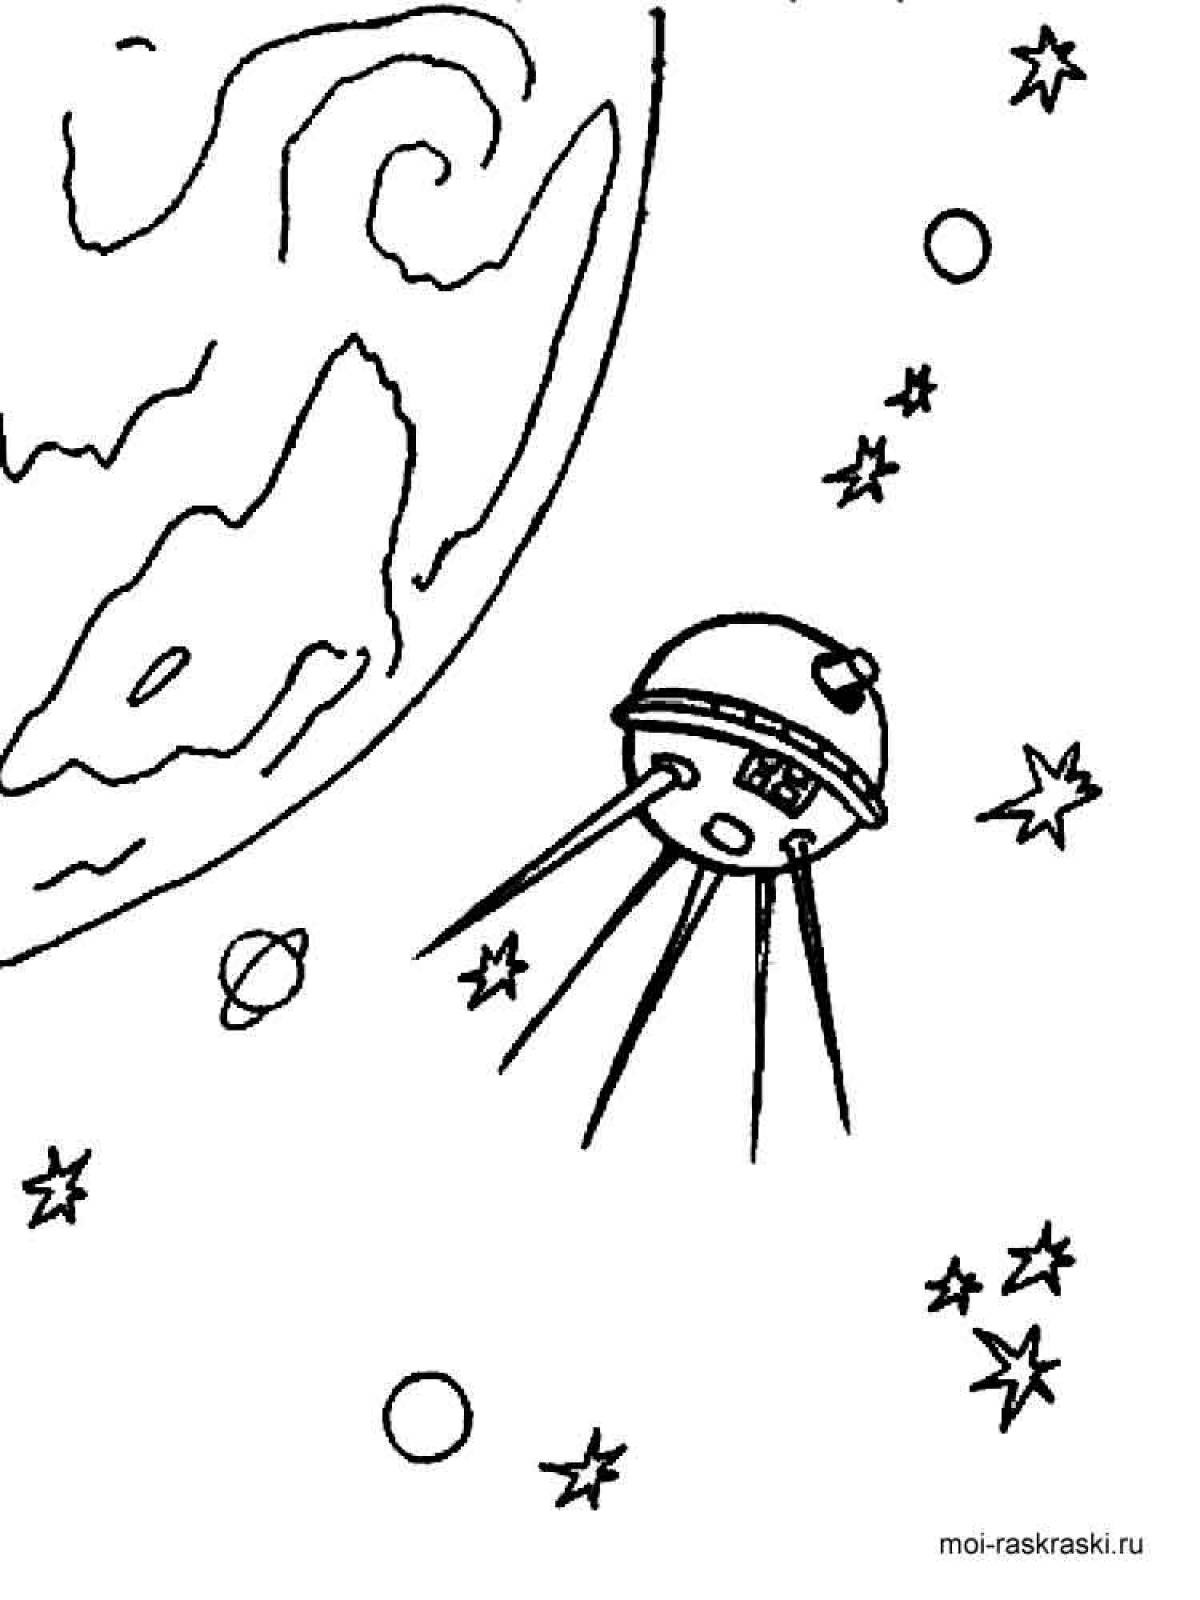 День космонавтики нарисовать карандашом. Рисунок на тему космос. Раскраска. В космосе. Космос раскраска для детей. Рисунок на тему космос карандашом.